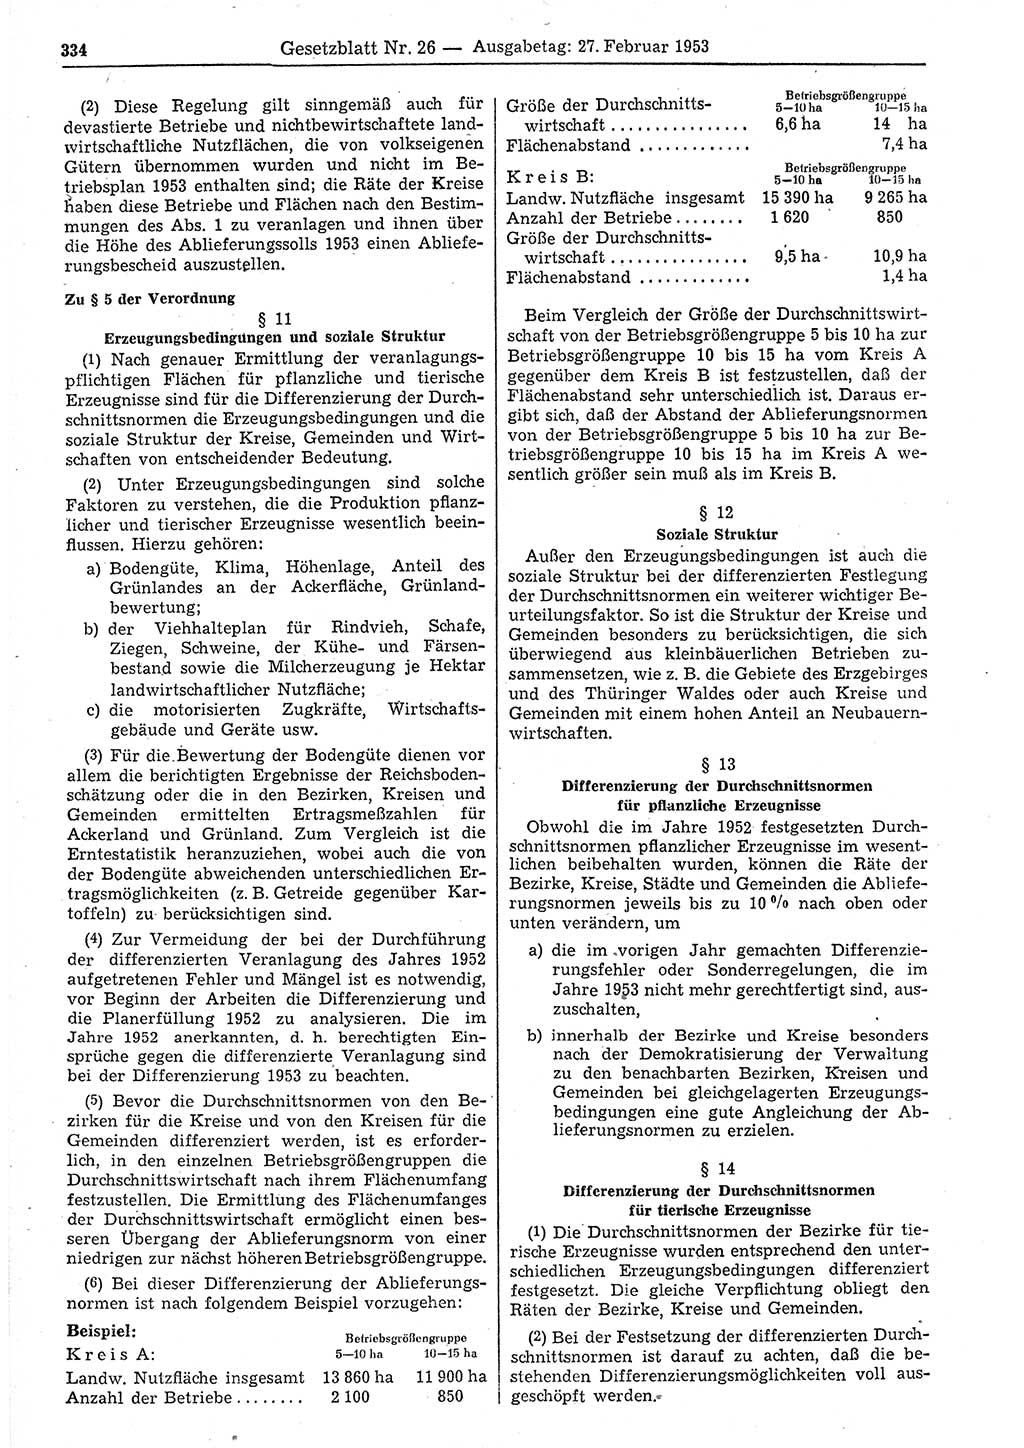 Gesetzblatt (GBl.) der Deutschen Demokratischen Republik (DDR) 1953, Seite 334 (GBl. DDR 1953, S. 334)